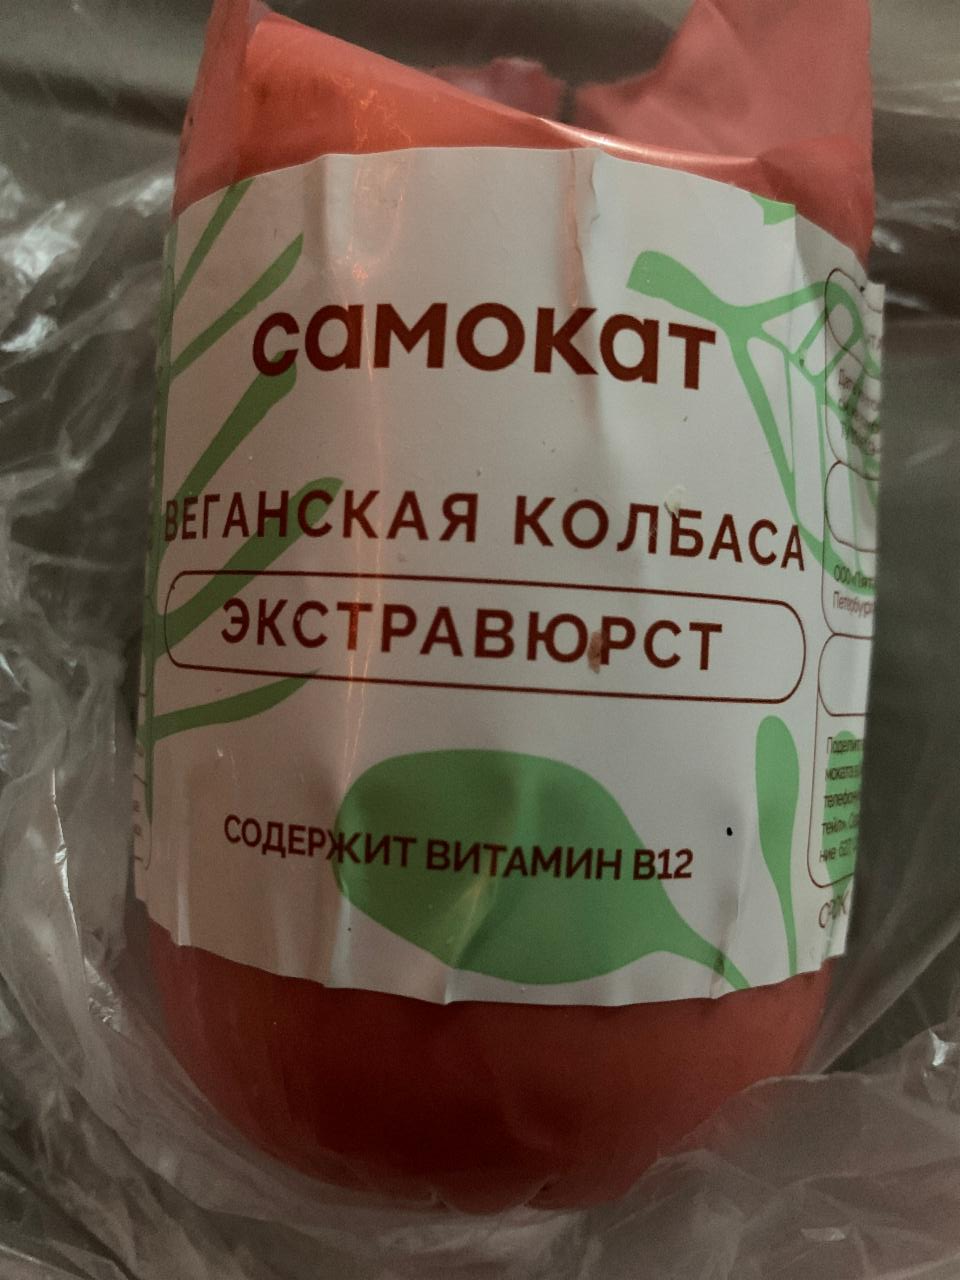 Фото - Веганская колбаса самокат экстравюрст Самокат